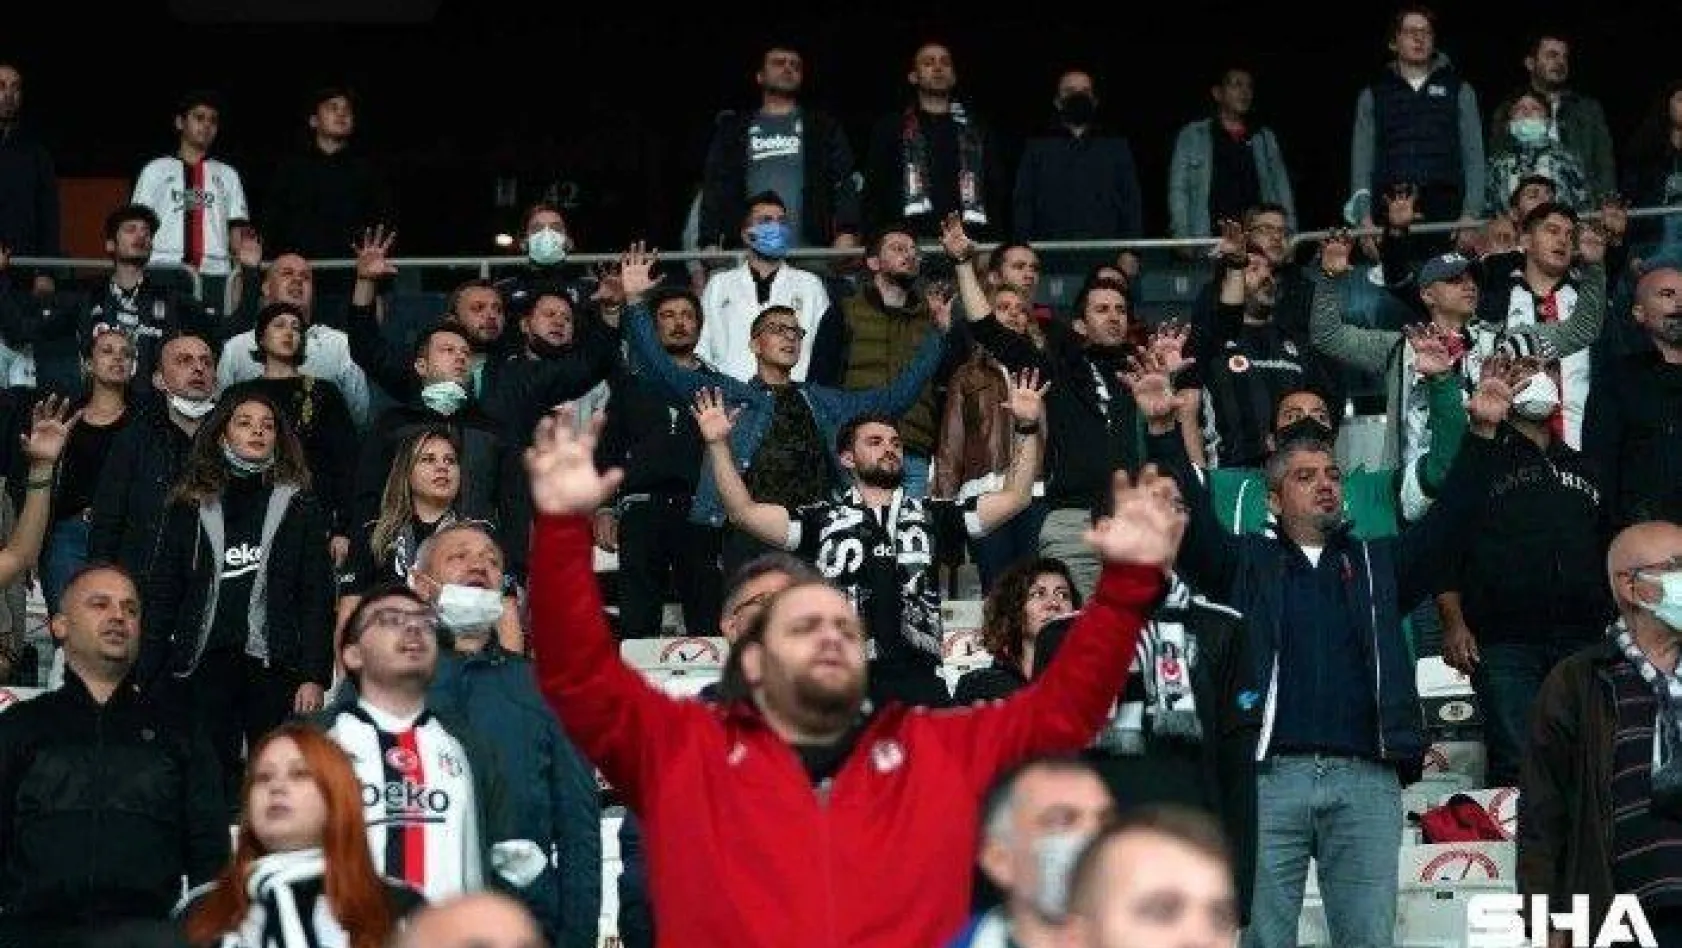 Süper Lig: Beşiktaş: 0 - DG Sivasspor: 0 (Maç devam ediyor)